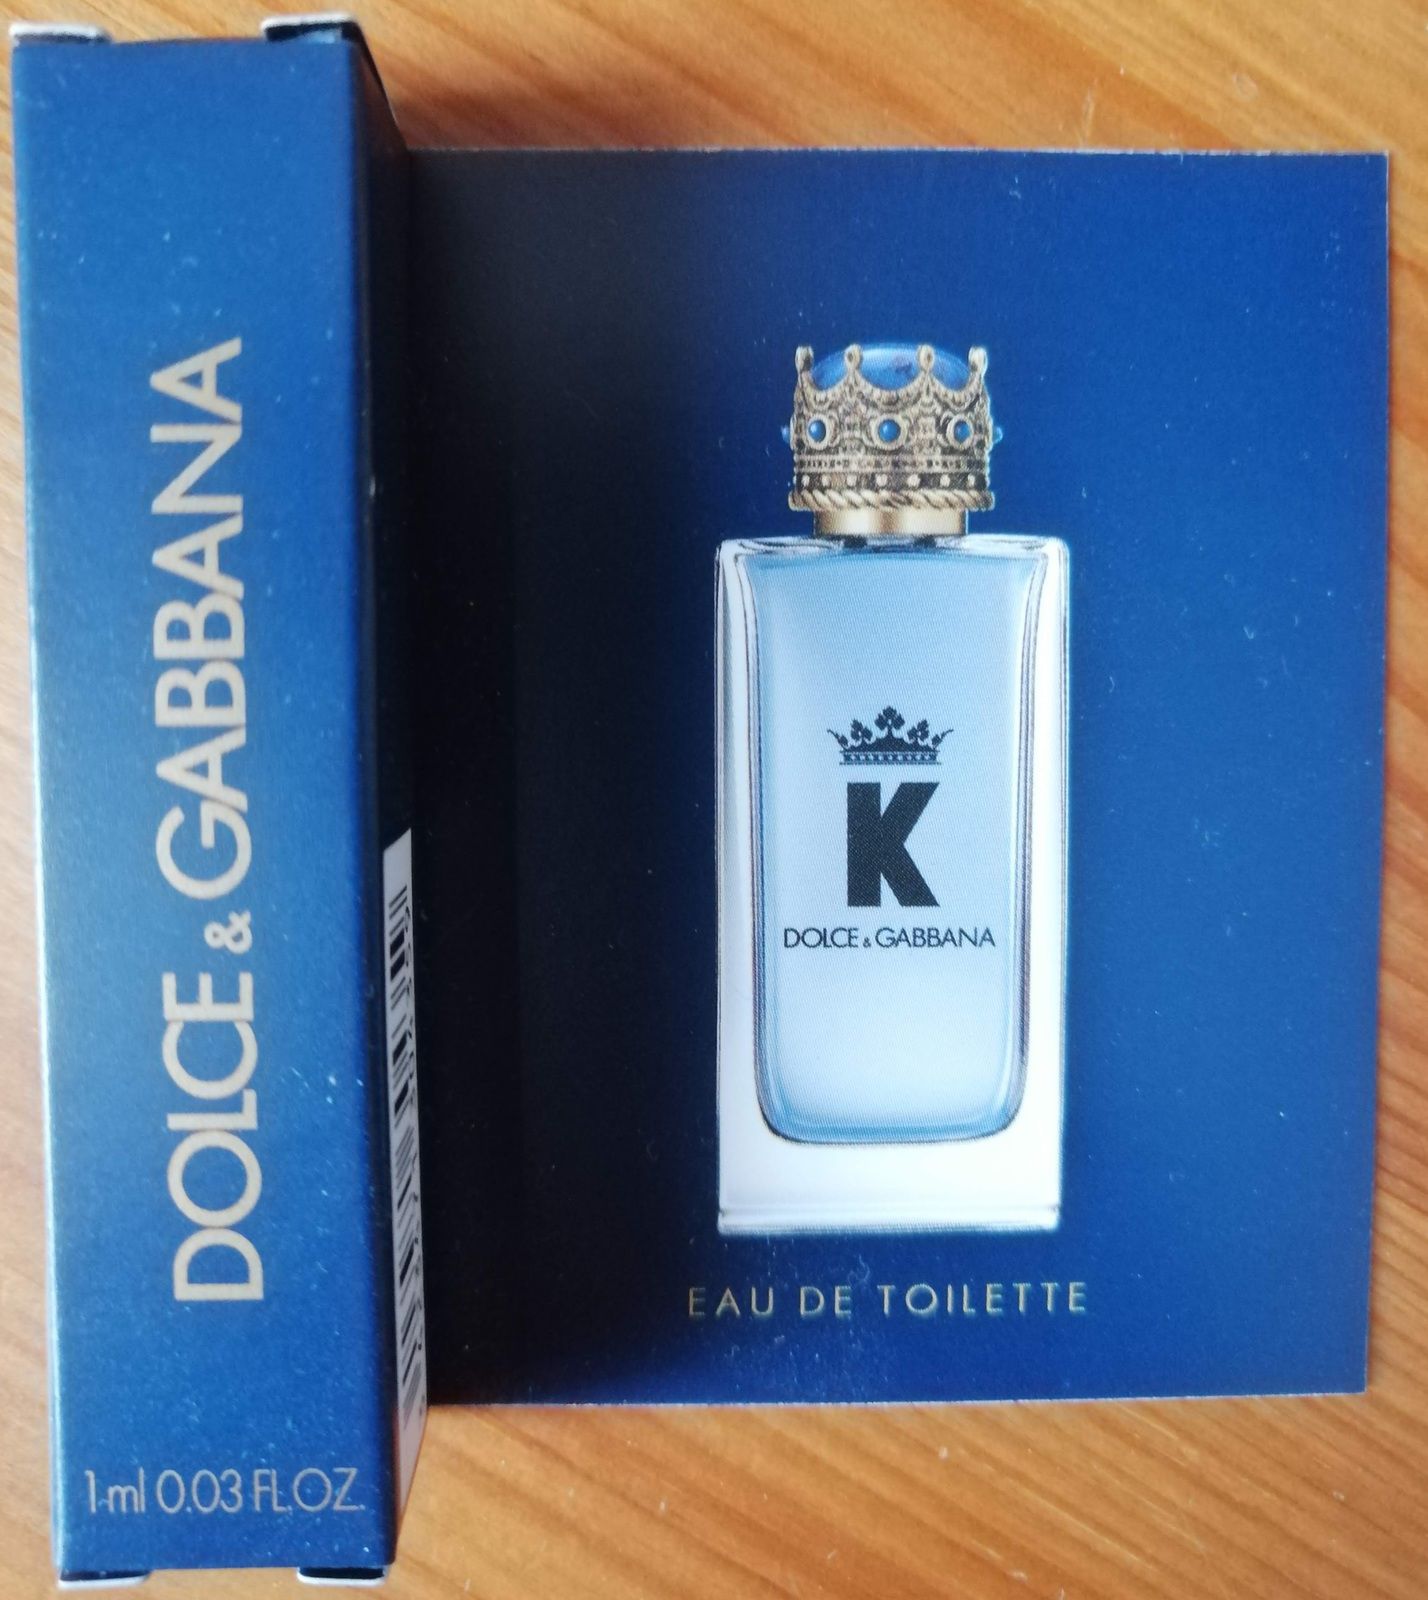 K de Dolce et Gabbana - 1001 envies de parfums